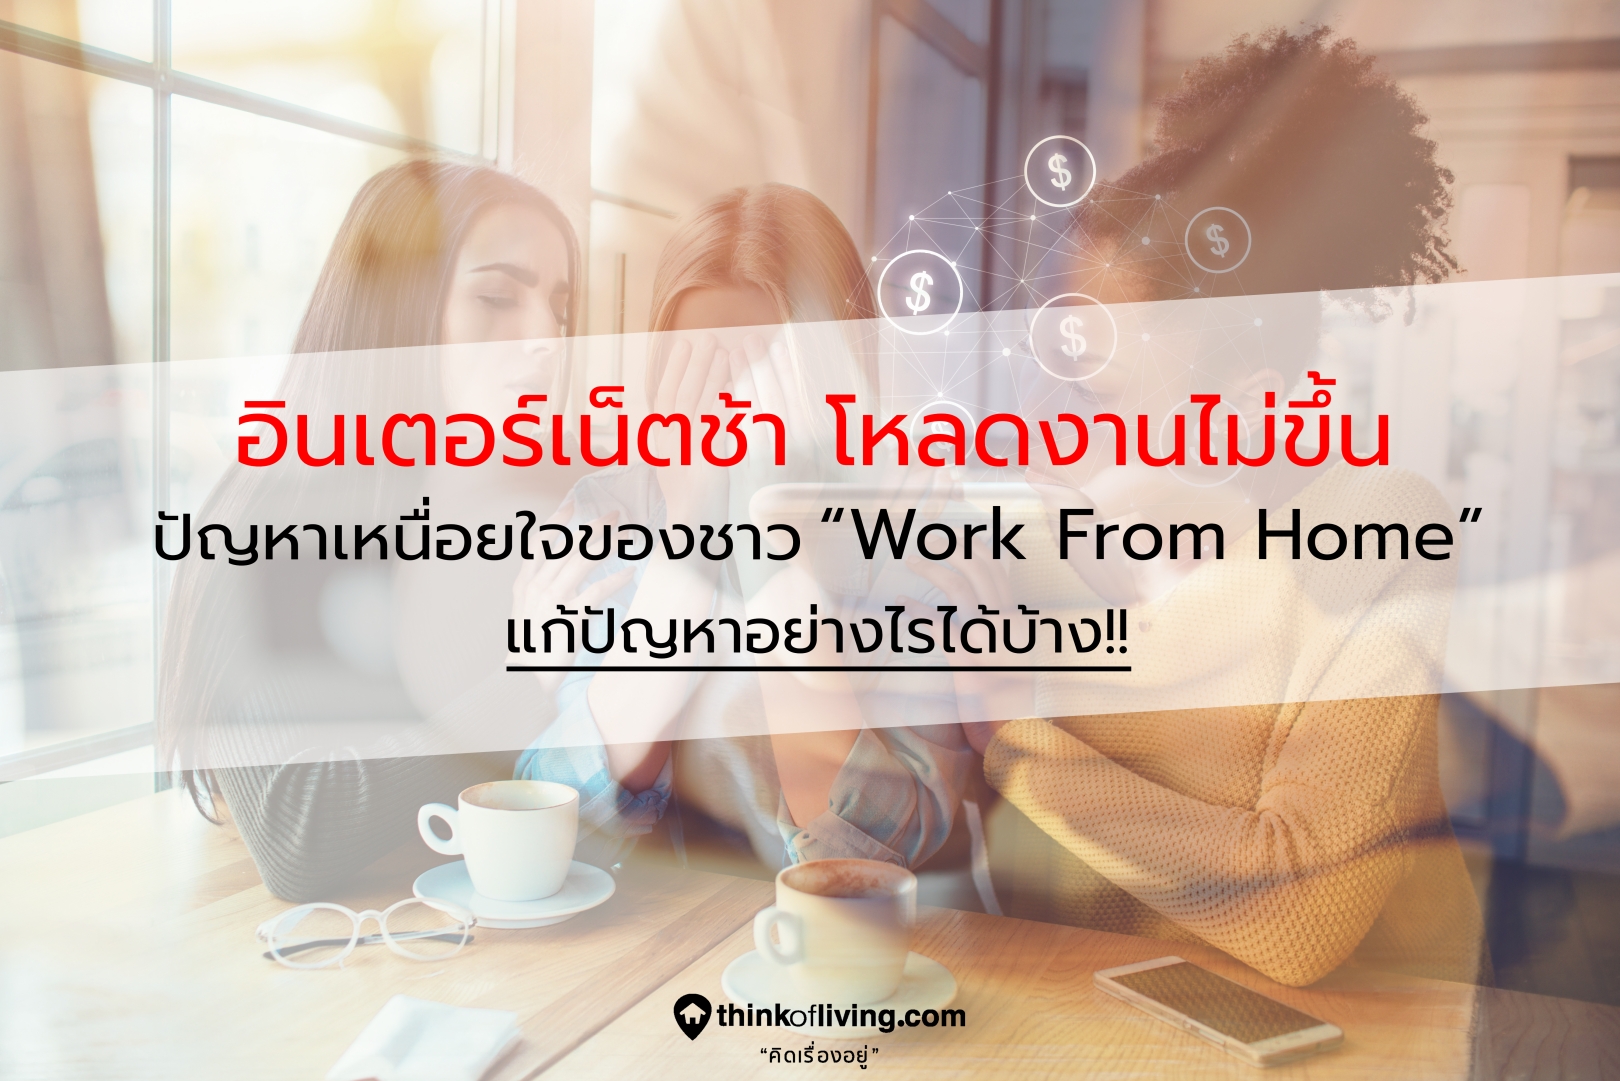 อินเตอร์เน็ตช้า โหลดงานไม่ขึ้น ปัญหากวนใจของชาว Work From Home  แก้ปัญหาอย่างไรได้บ้าง!! | Thinkofliving.Com